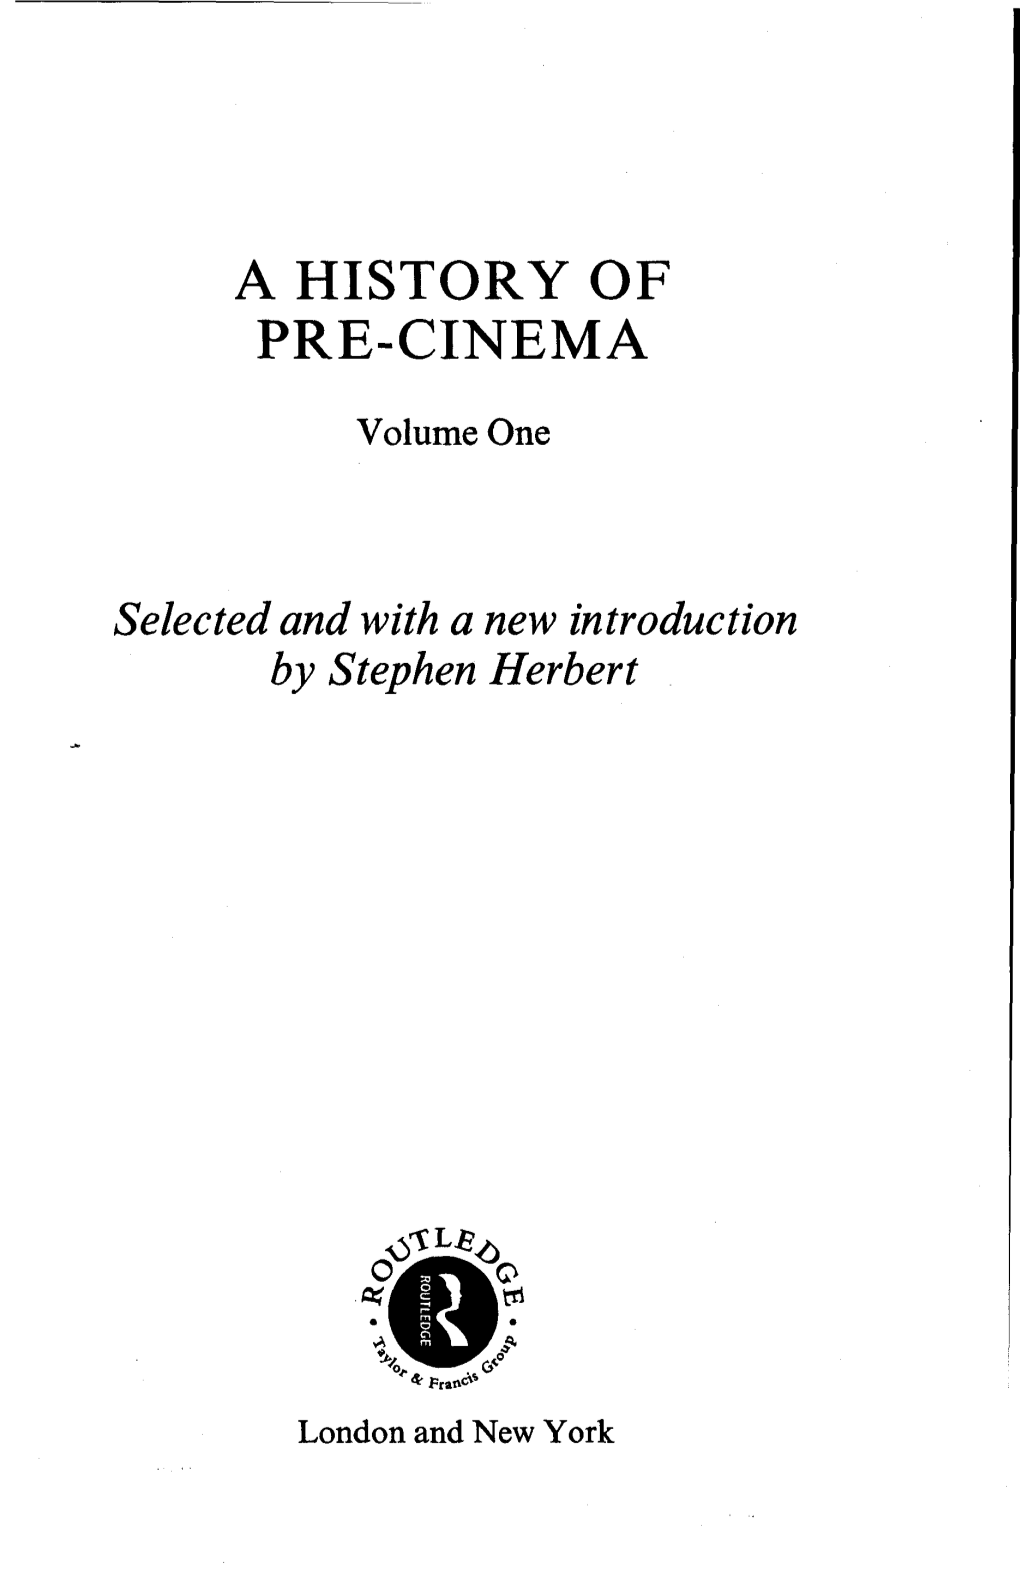 A History of Pre-Cinema